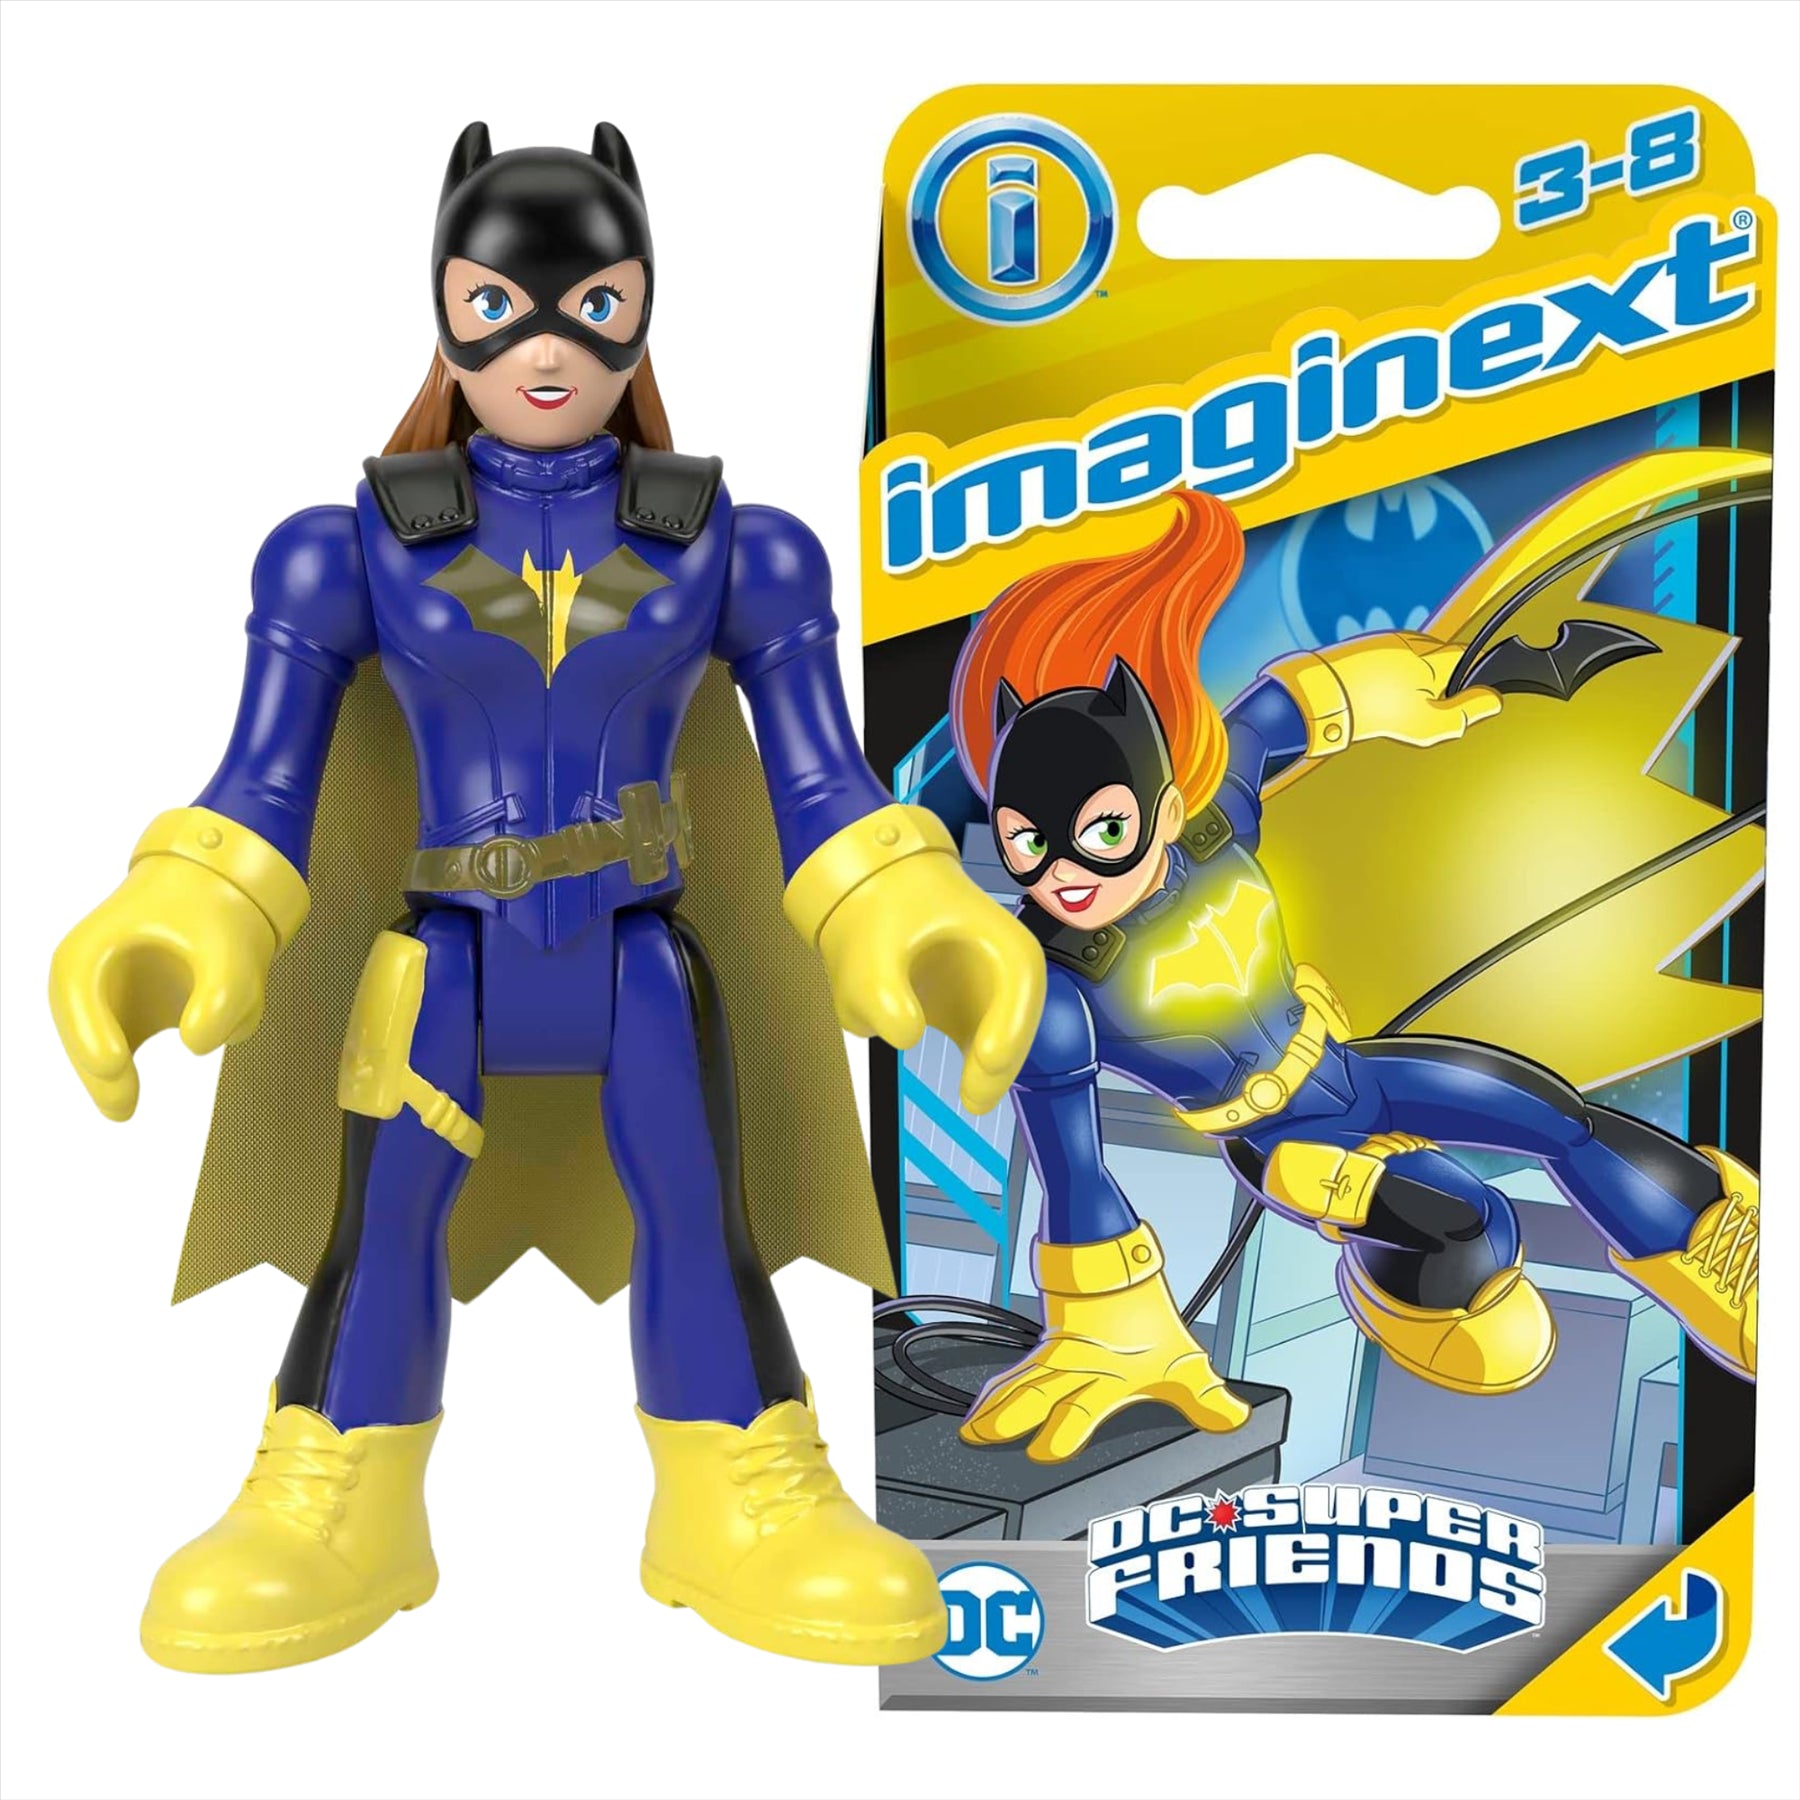 Imaginext DC Super Friends Batgirl Miniature Action Figure Play Toy